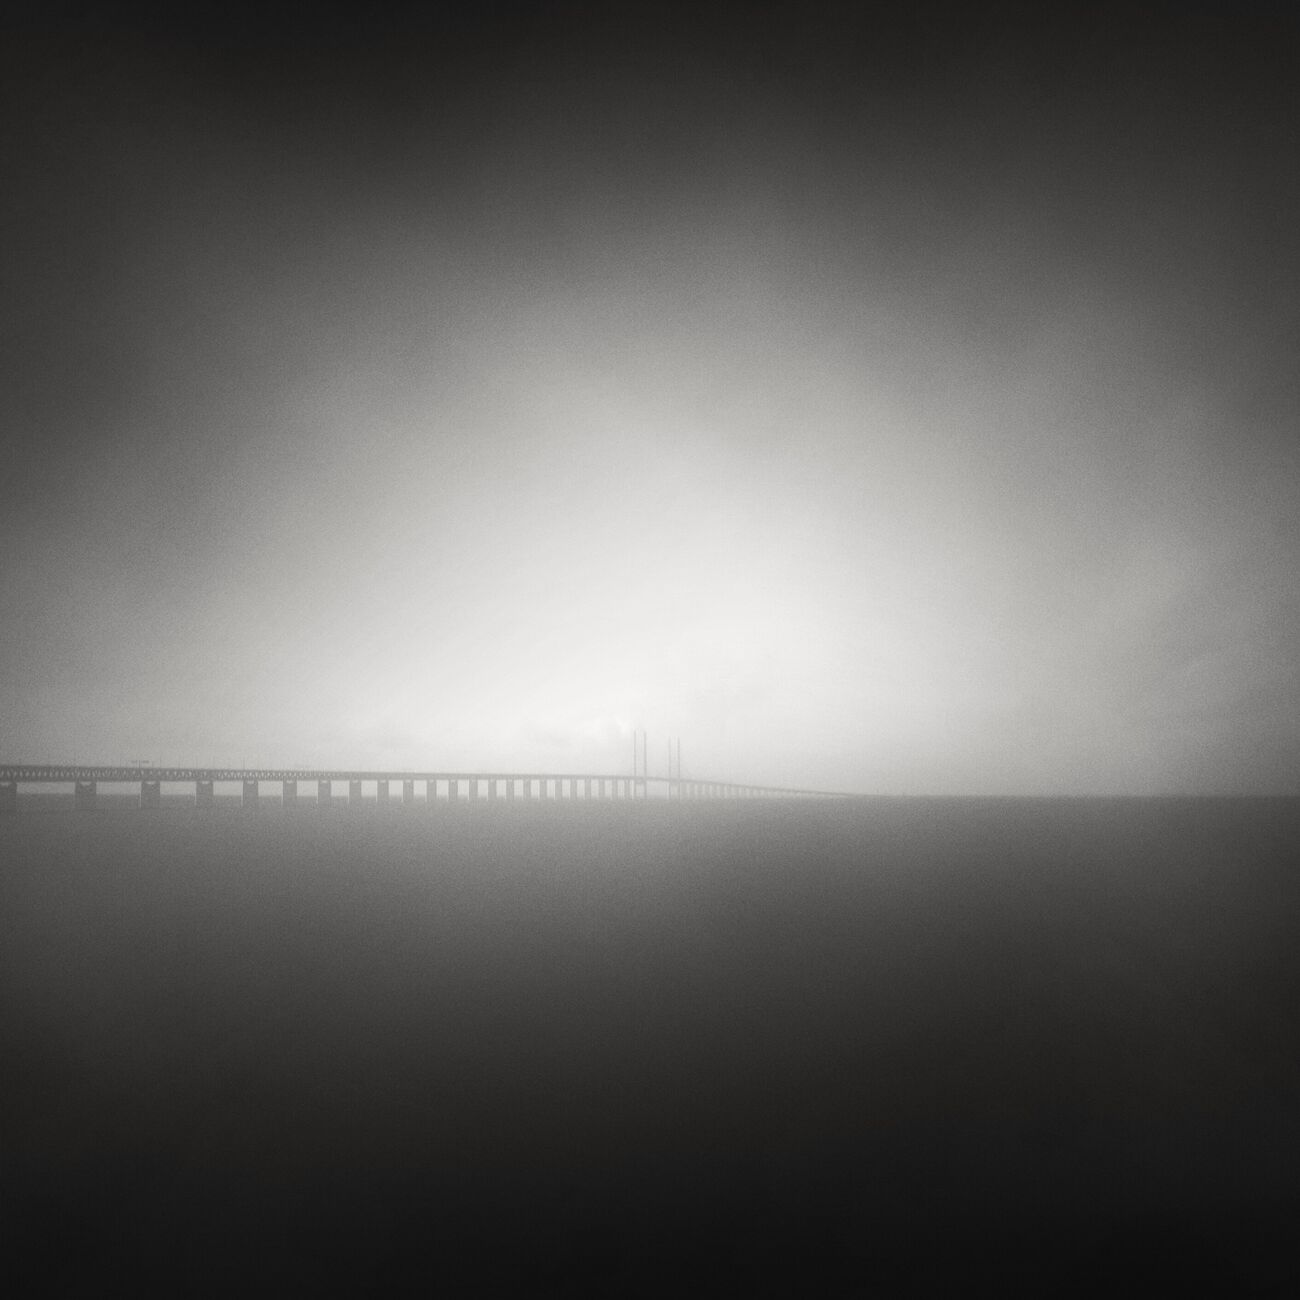 Photography 9.1 x 9.1 in, Foggy Öresund Bridge. Ref-1246-3 - Denis Olivier Photography